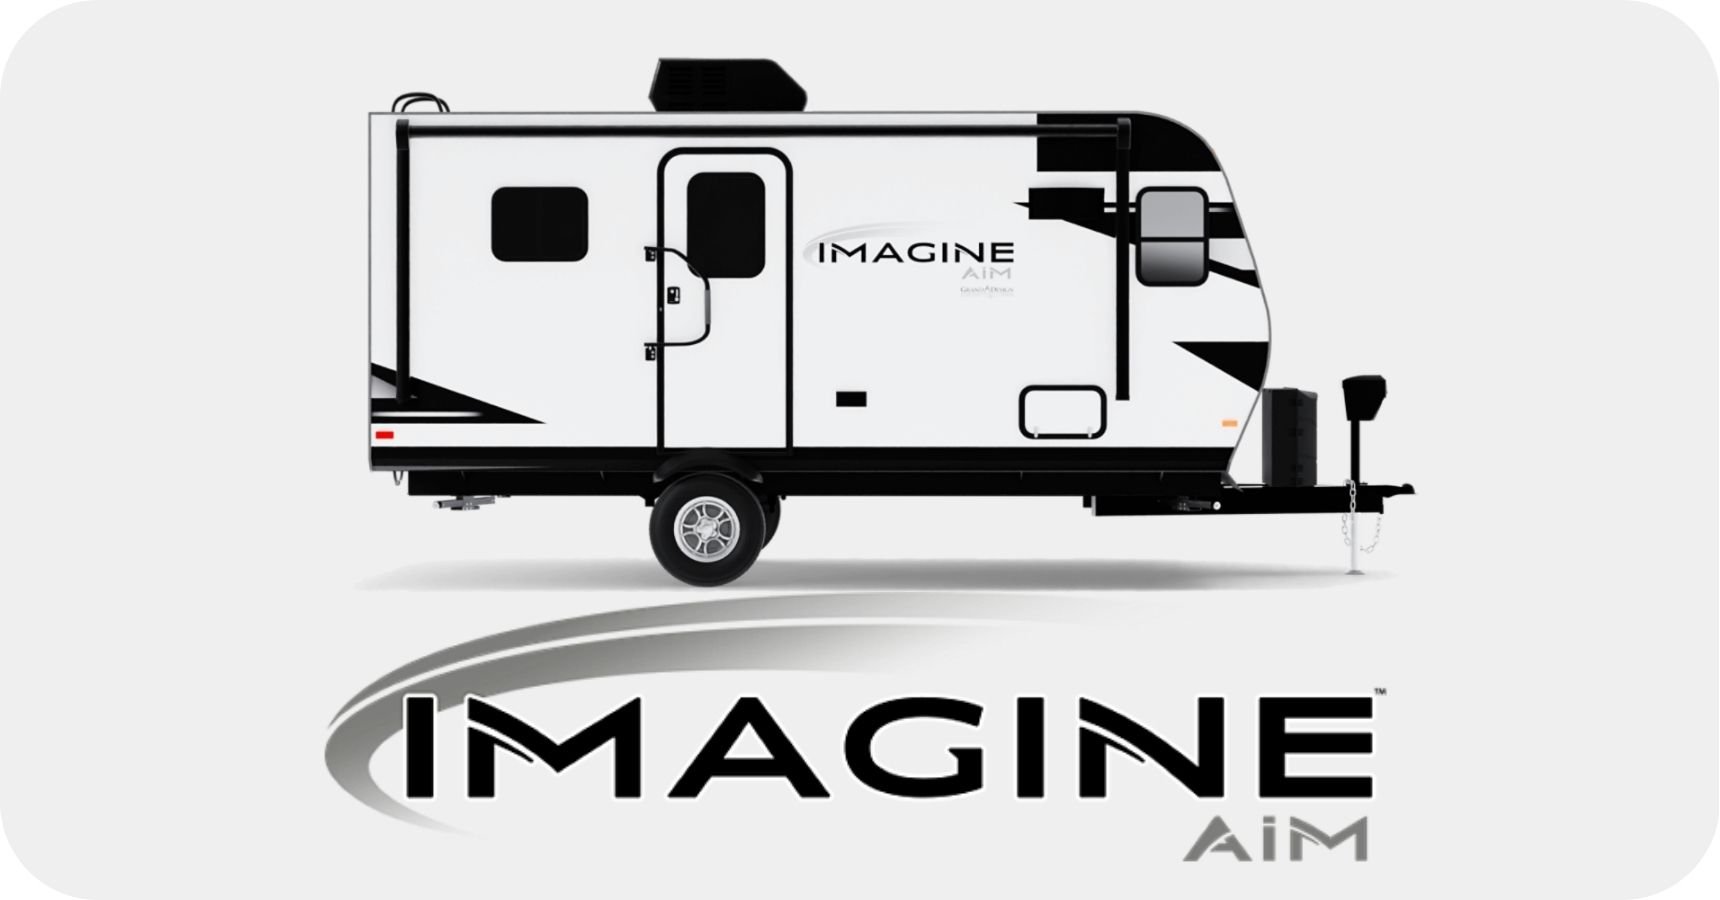 Grand Design Imagine AIM